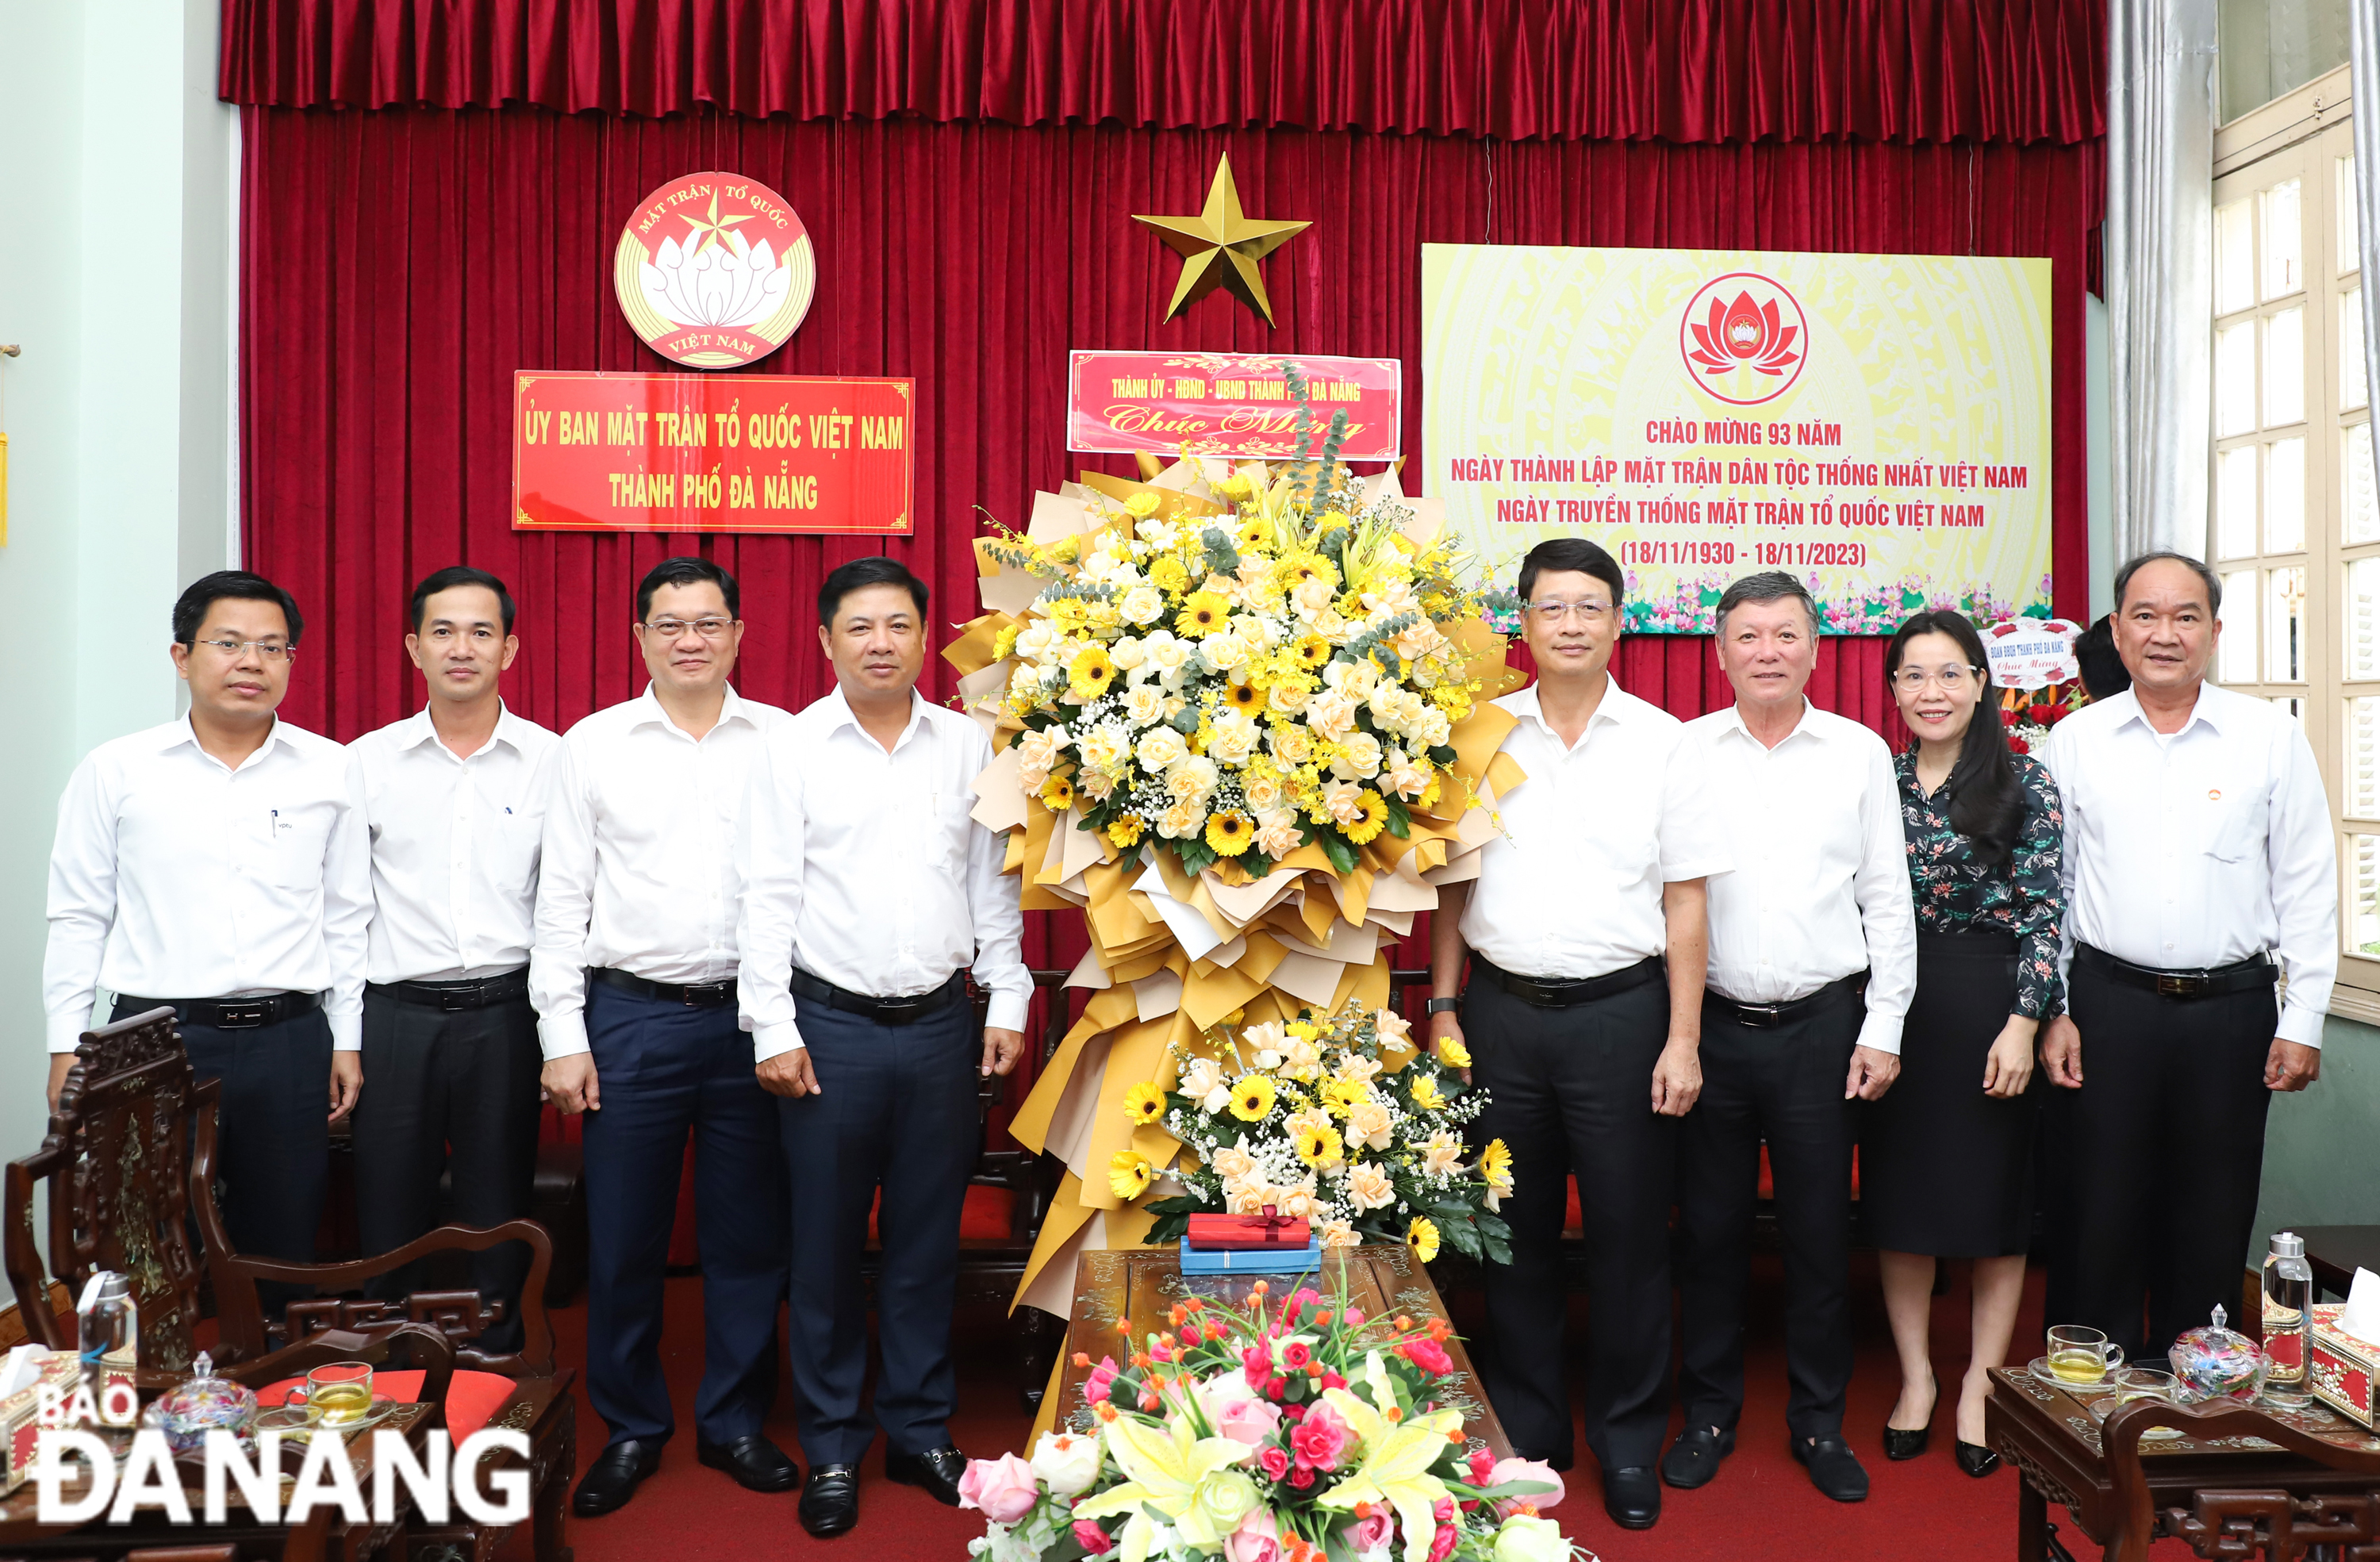 Phó Bí thư Thường trực Thành ủy Lương Nguyễn Minh Triết chúc mừng kỷ niệm 93 năm Ngày truyền thống MTTQ Việt Nam